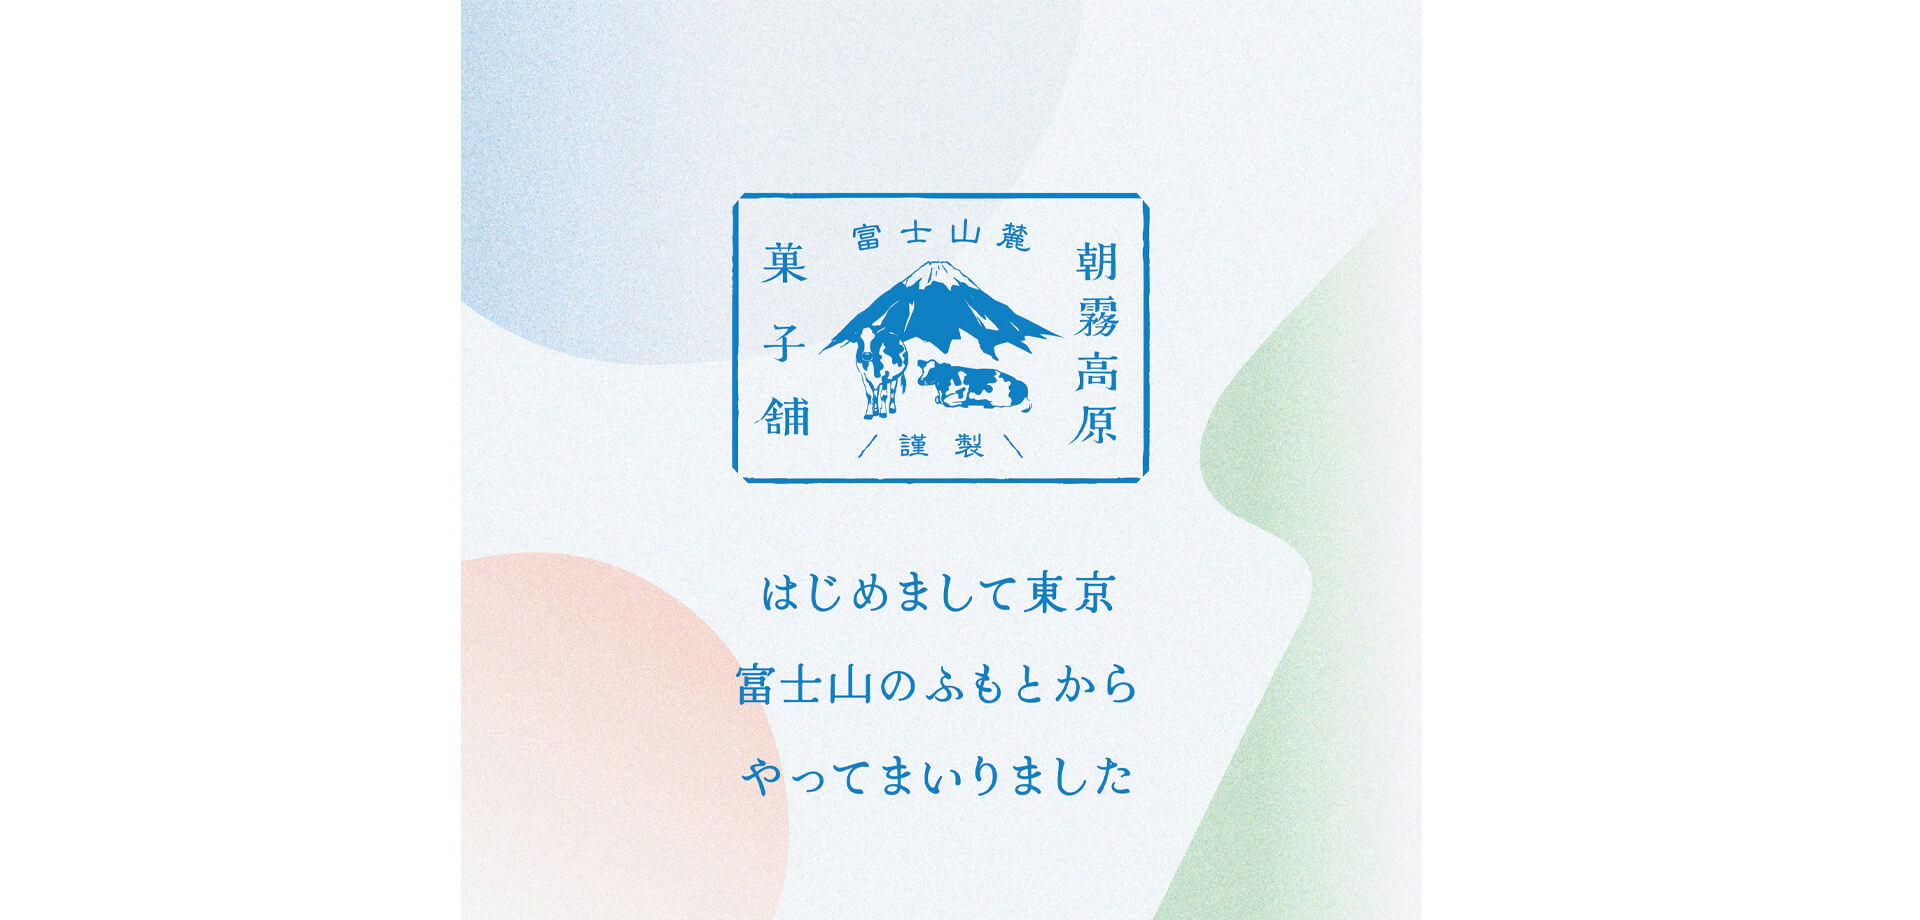 「朝霧高原菓子舗」ロゴ